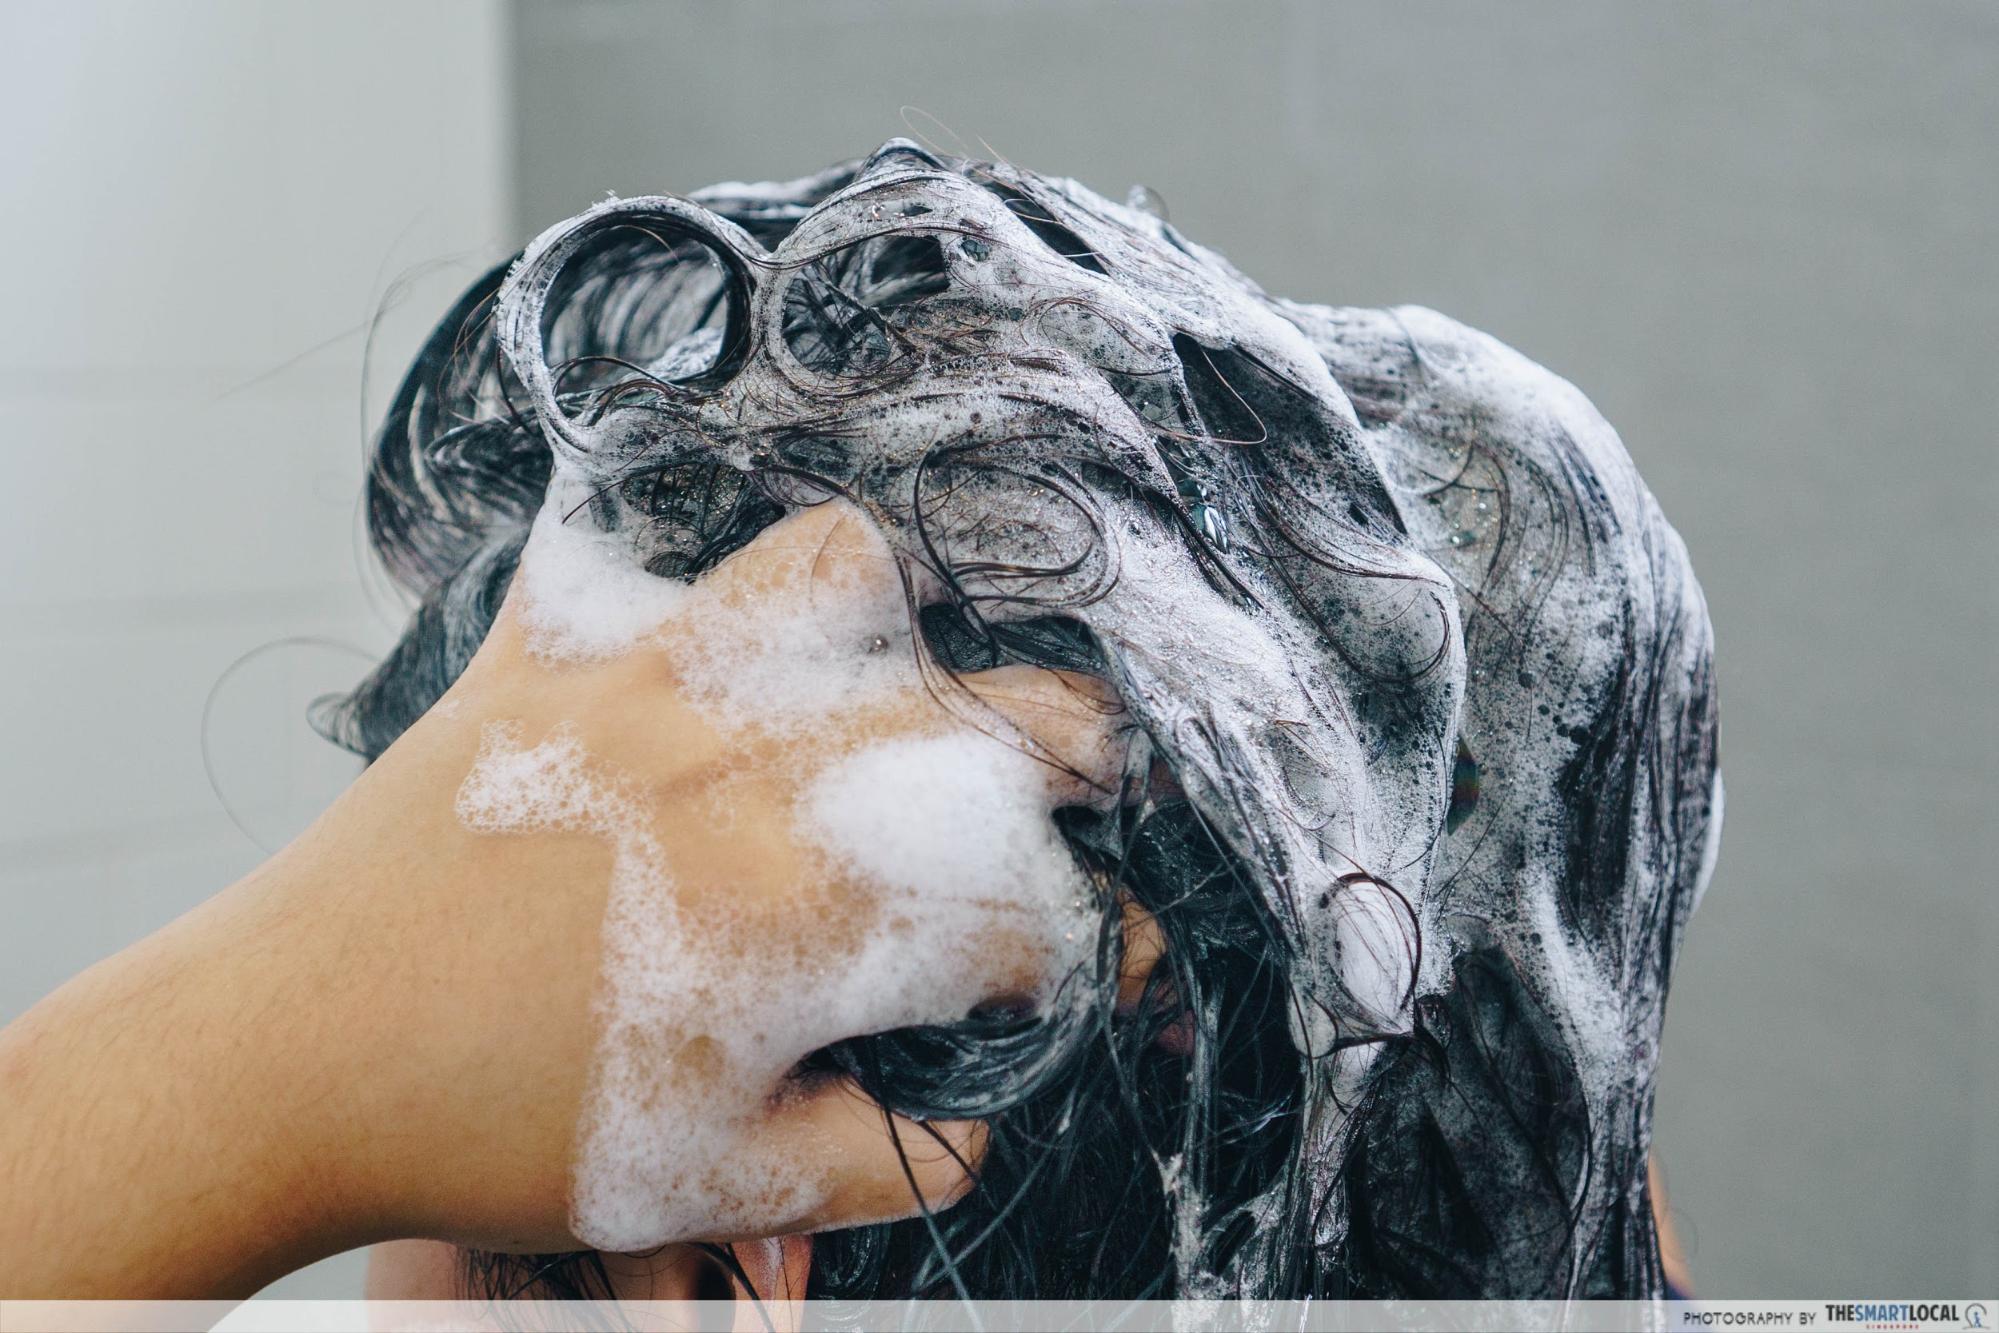 shampooing an oily scalp